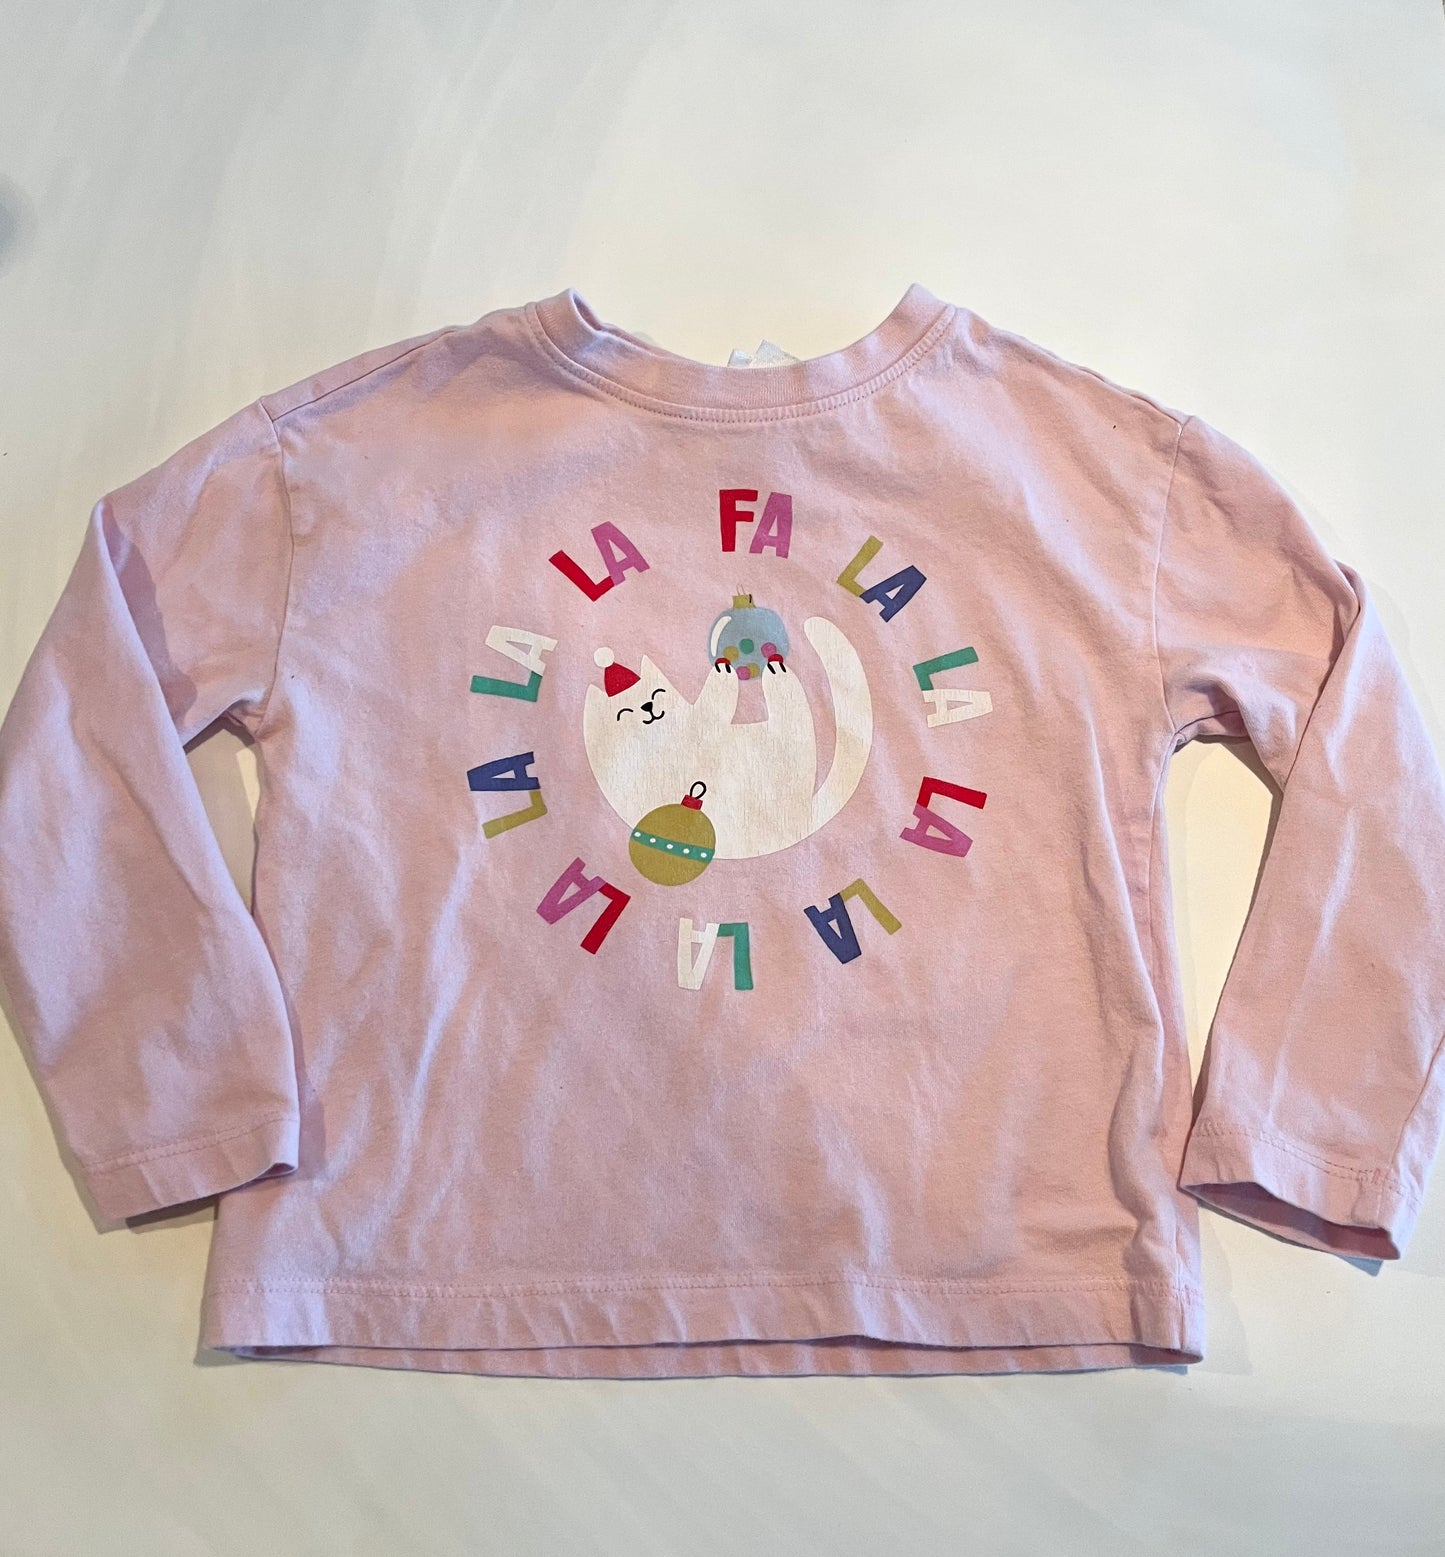 Hanna Girl’s Long Sleeved, Pink “Fa La La La” Shirt, Sz 4